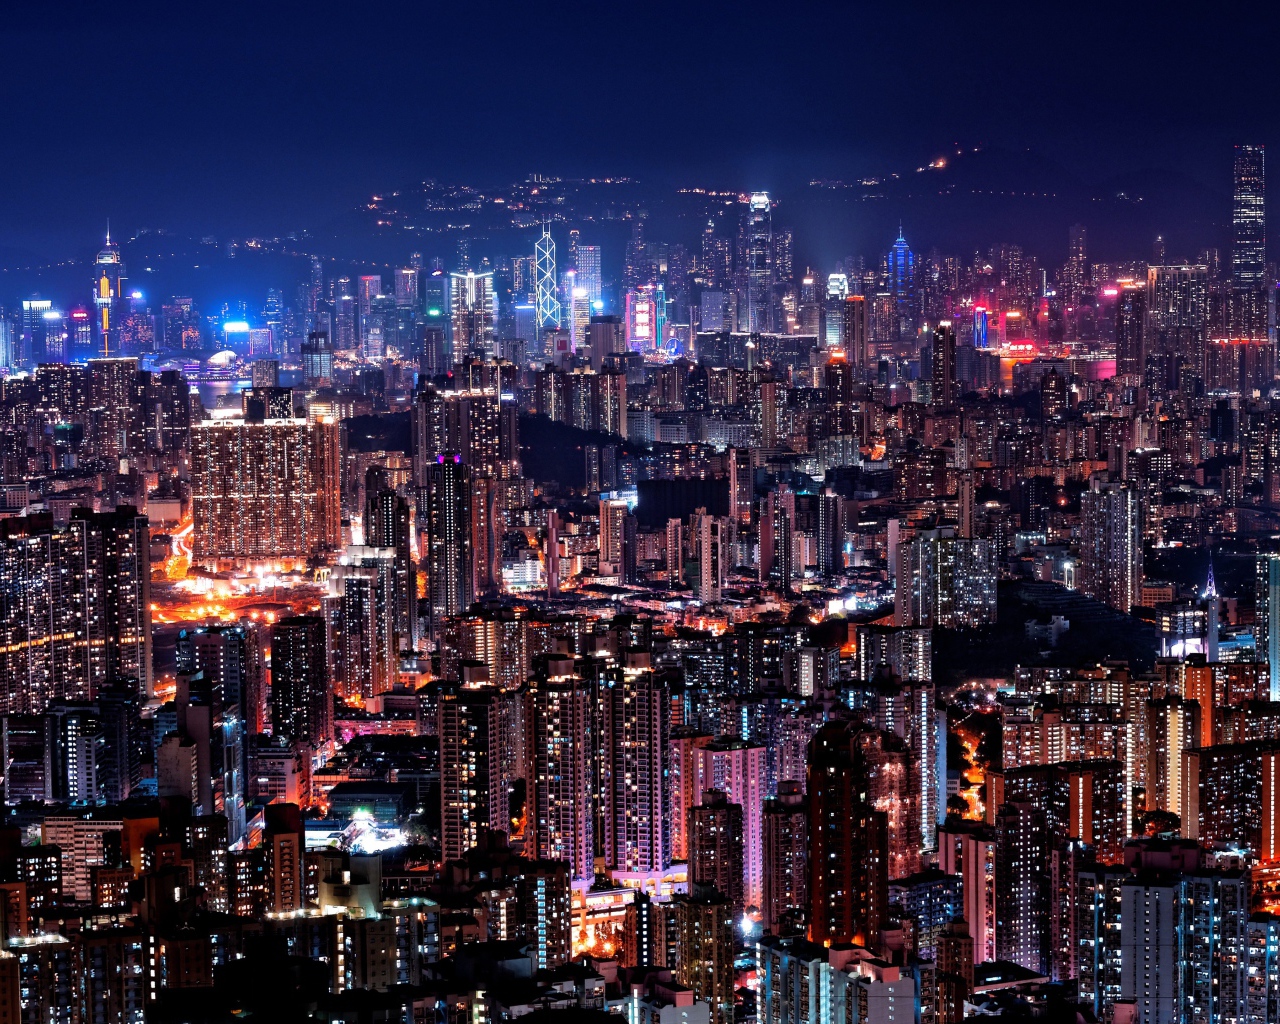 Вид на ночной освещенный Гонконг, Китай